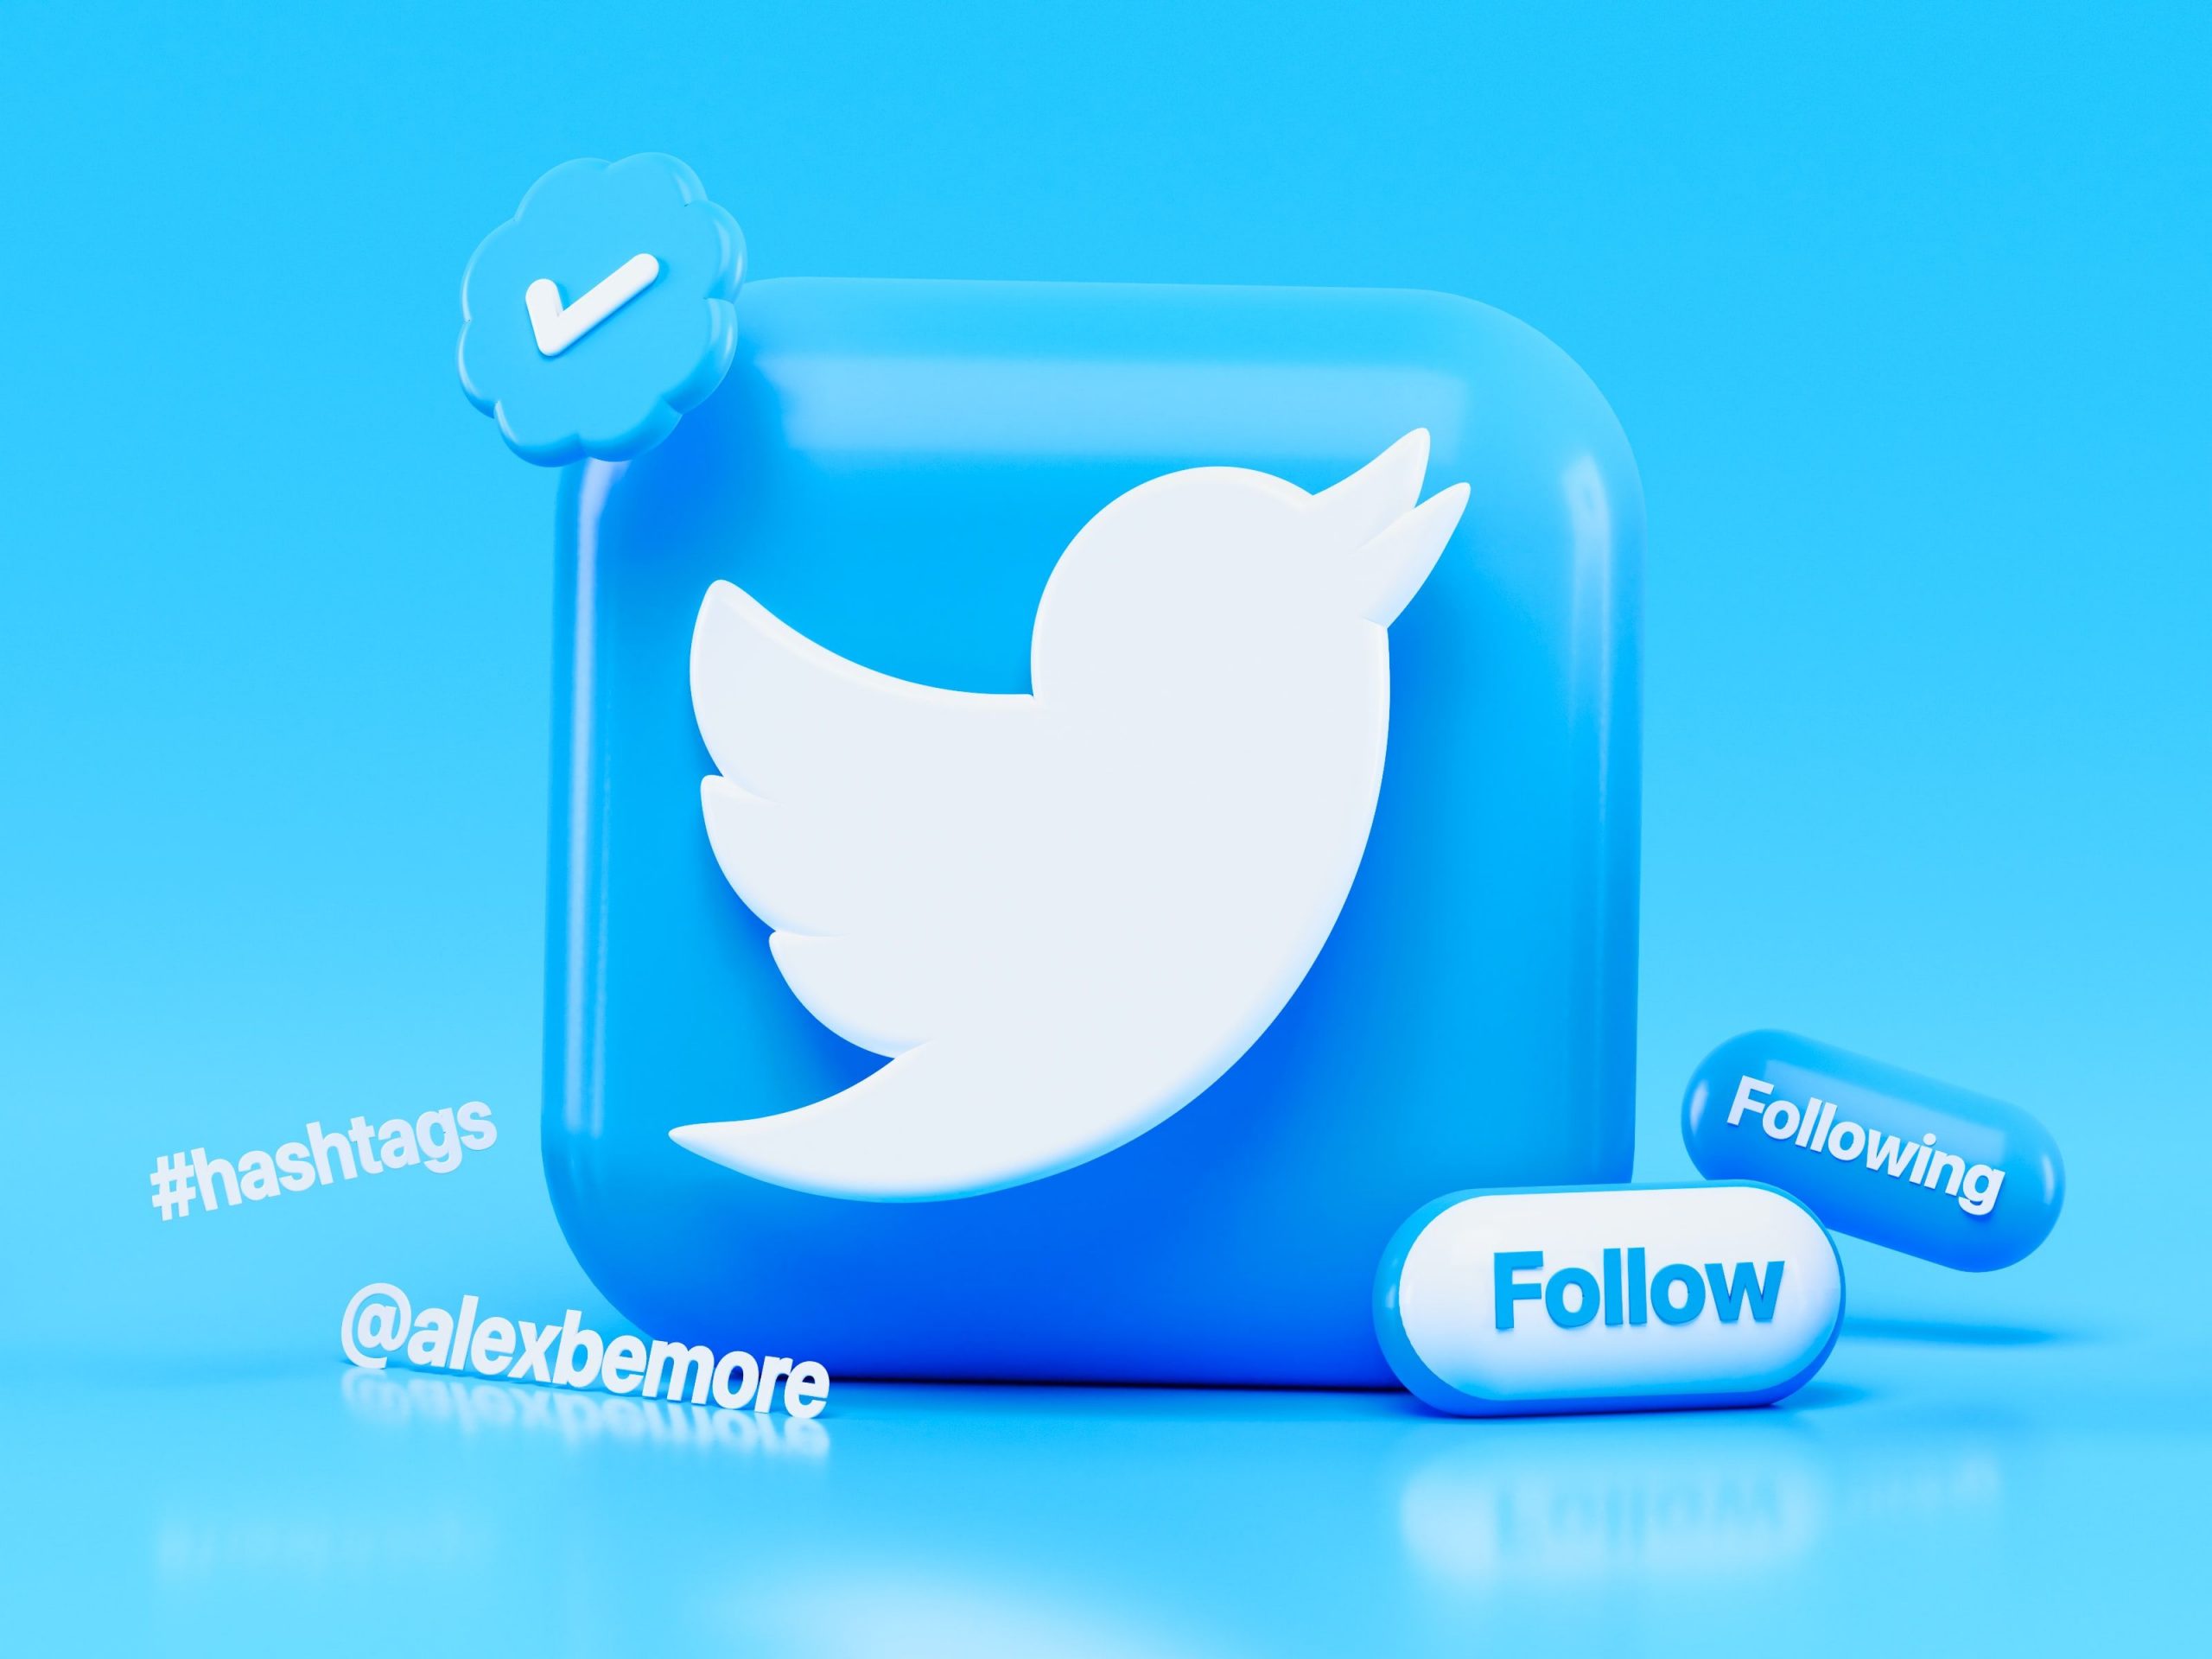 Twitter Blue Tick: ट्विटर पर ब्लू टिक कैसे मिलता है?